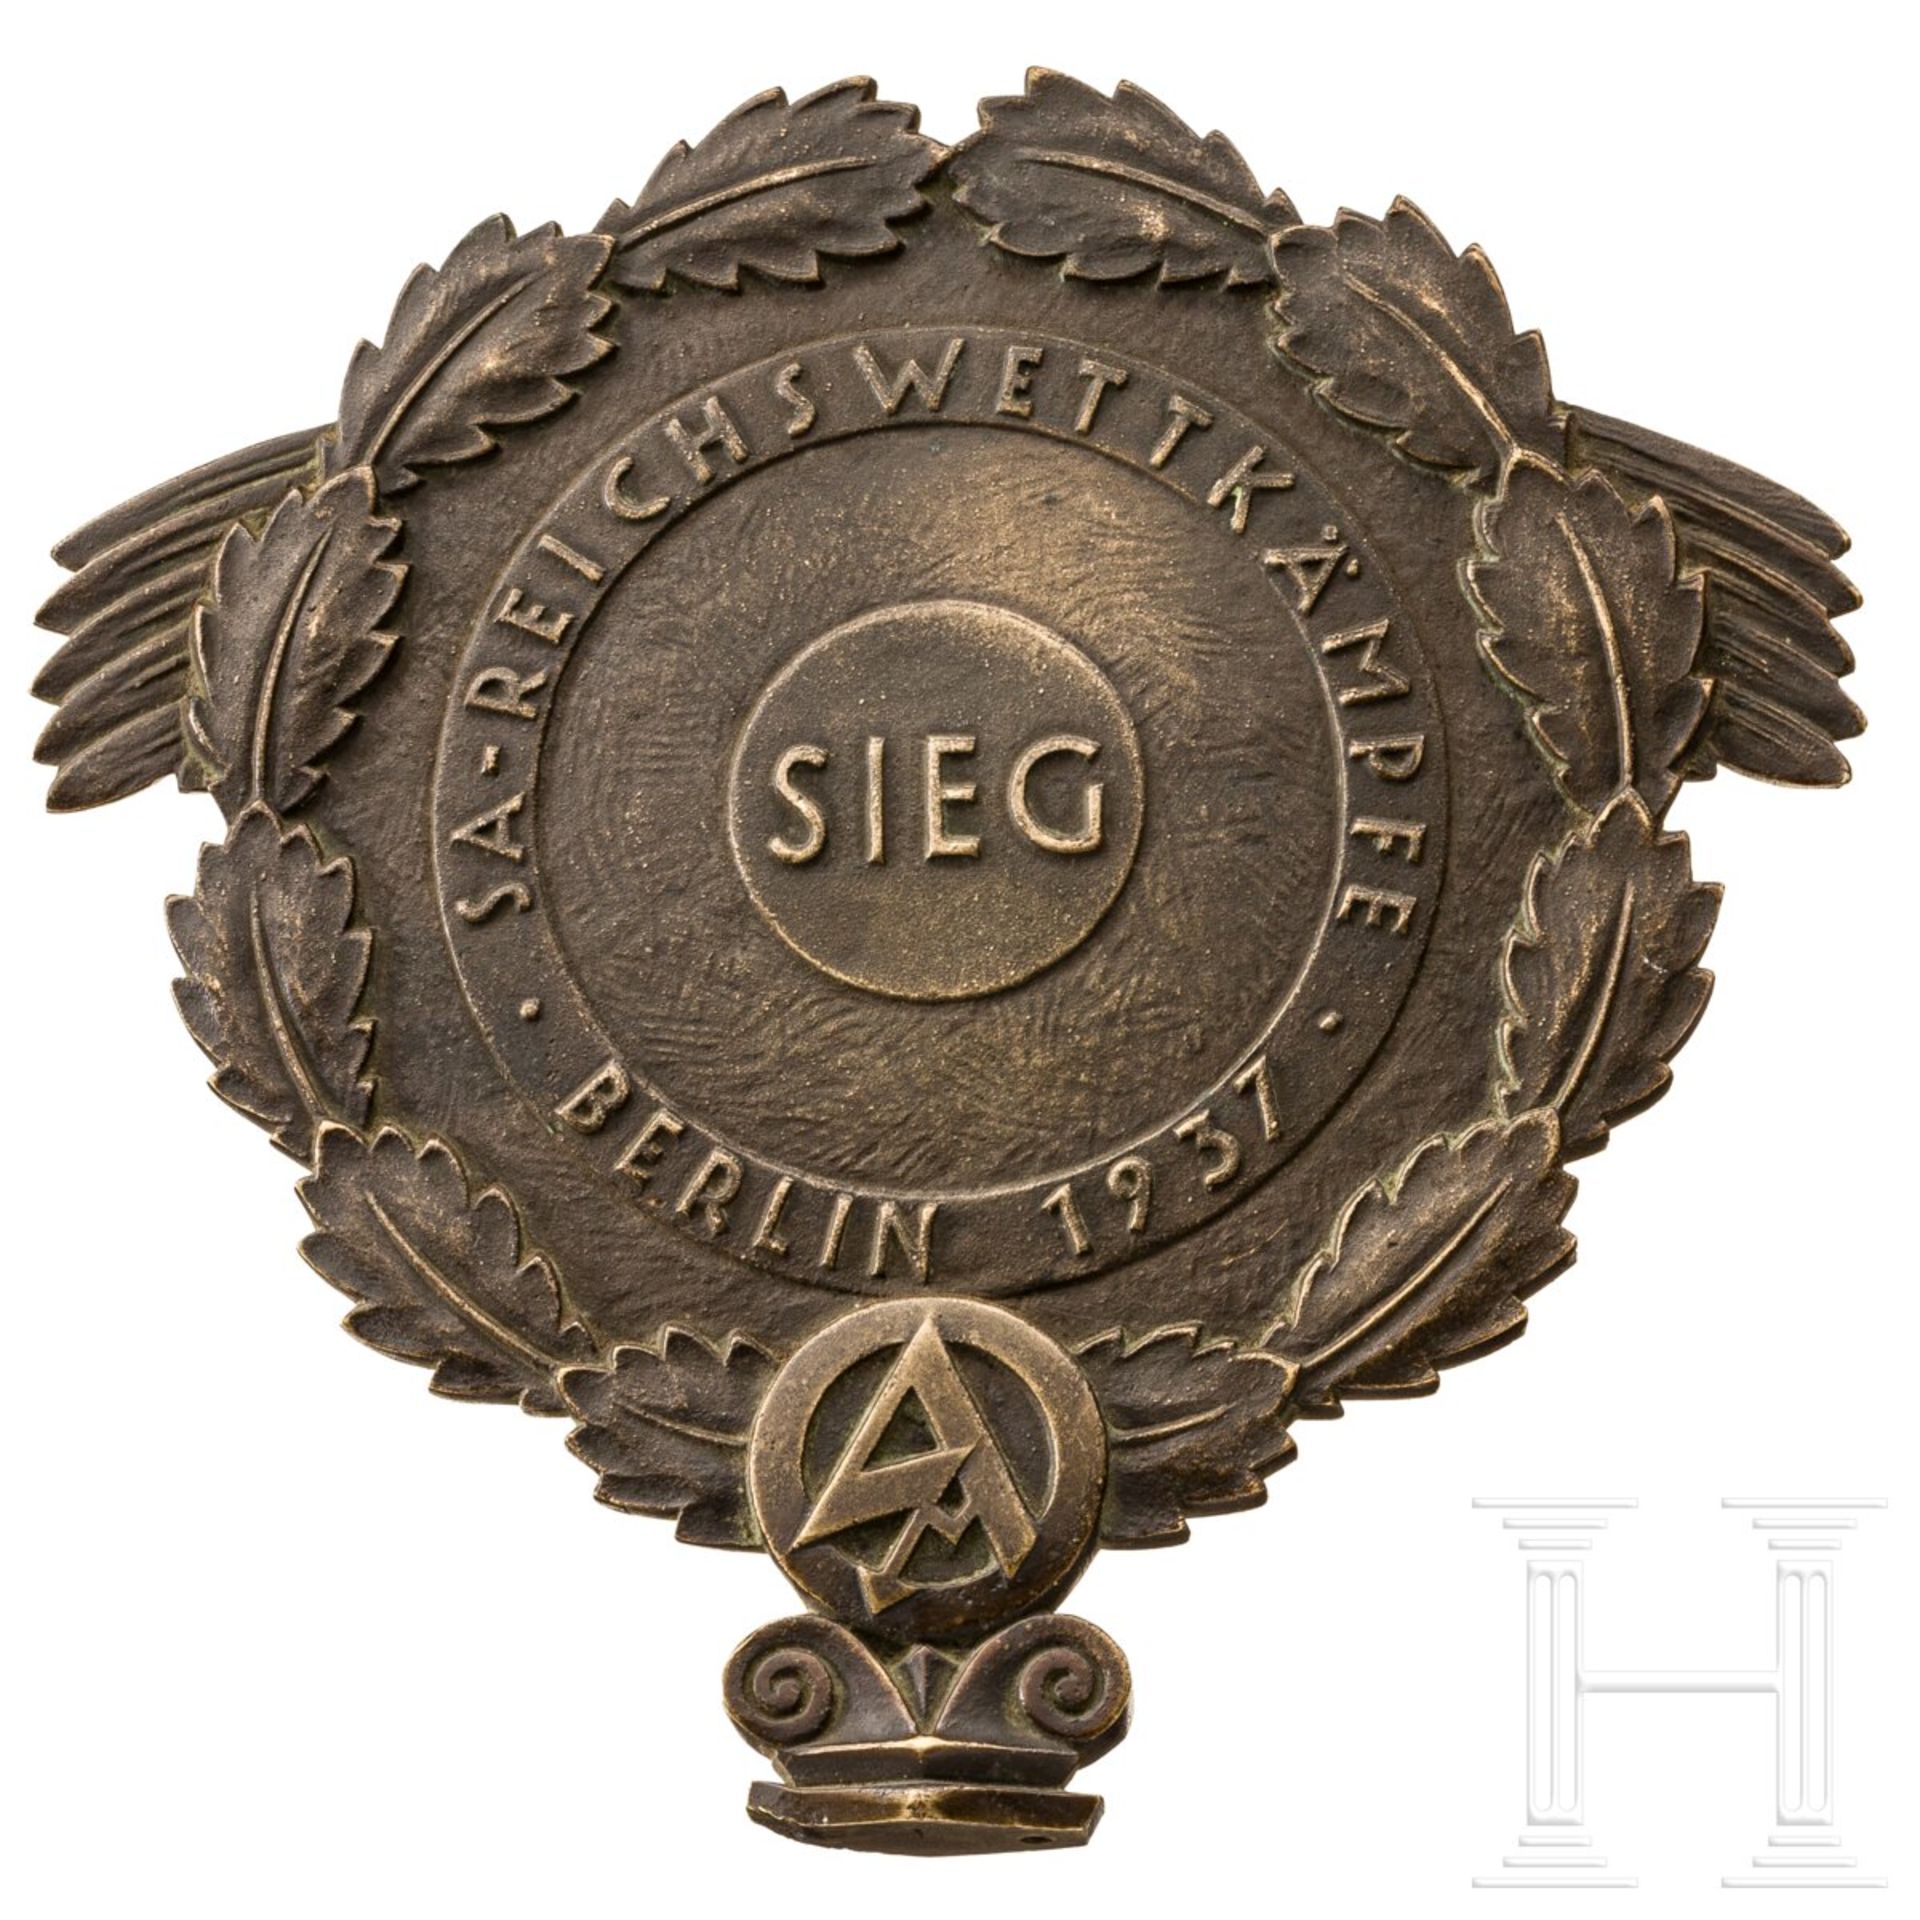 Siegerpreis der SA-Reichswettkämpfe Berlin, 1937 - Image 2 of 4